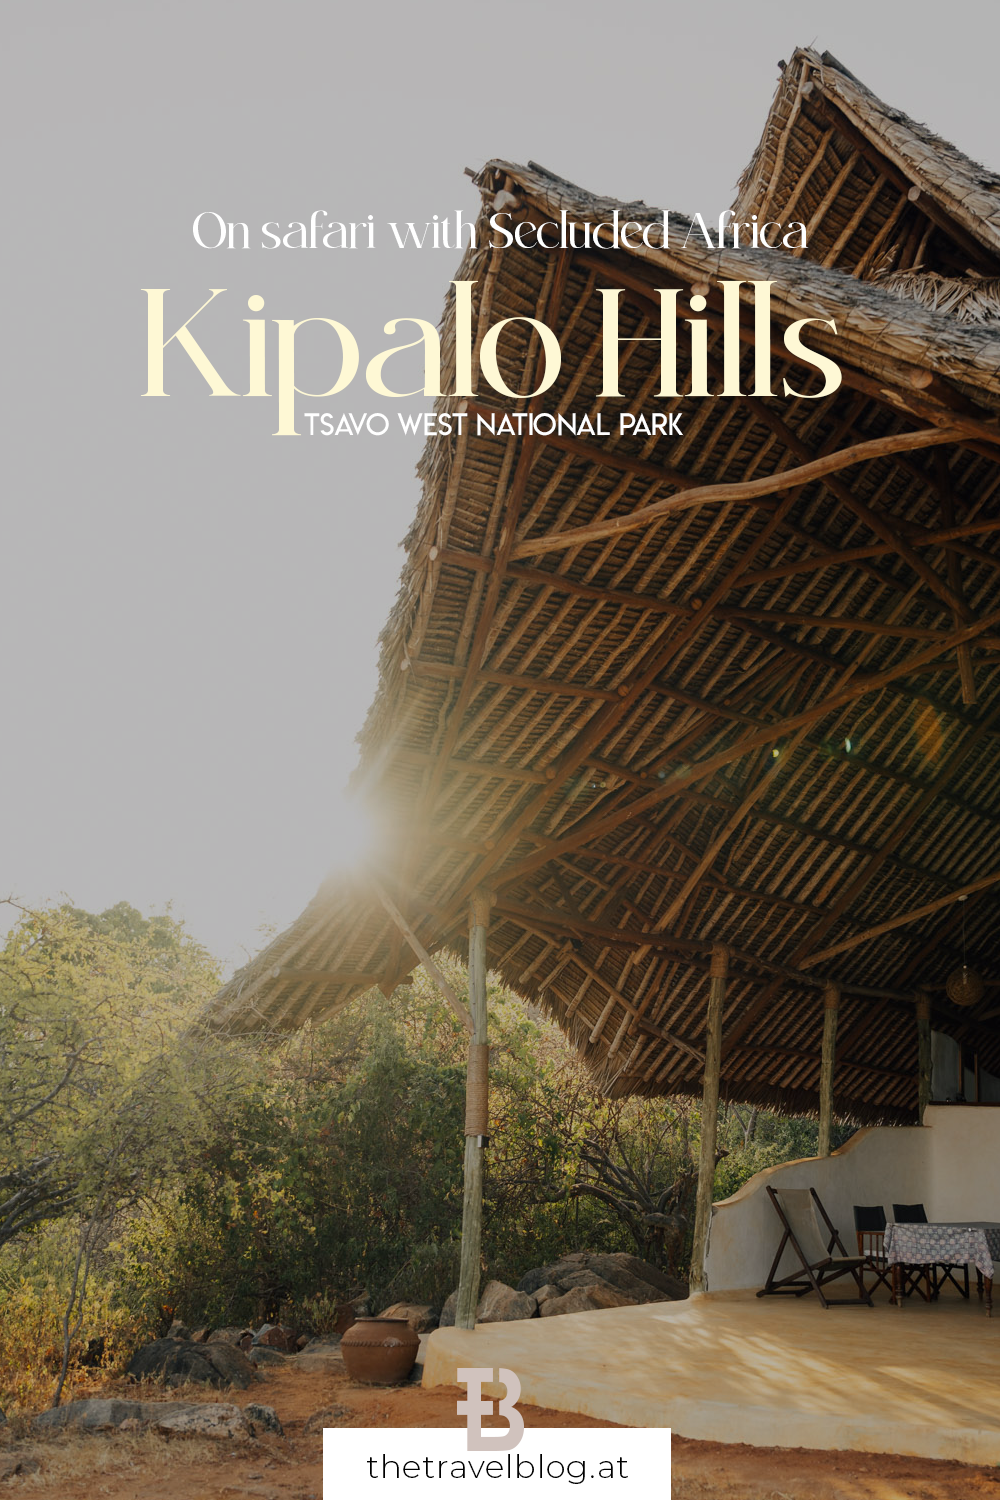 Kipalo Hills in Tsavo West National Park in Kenya